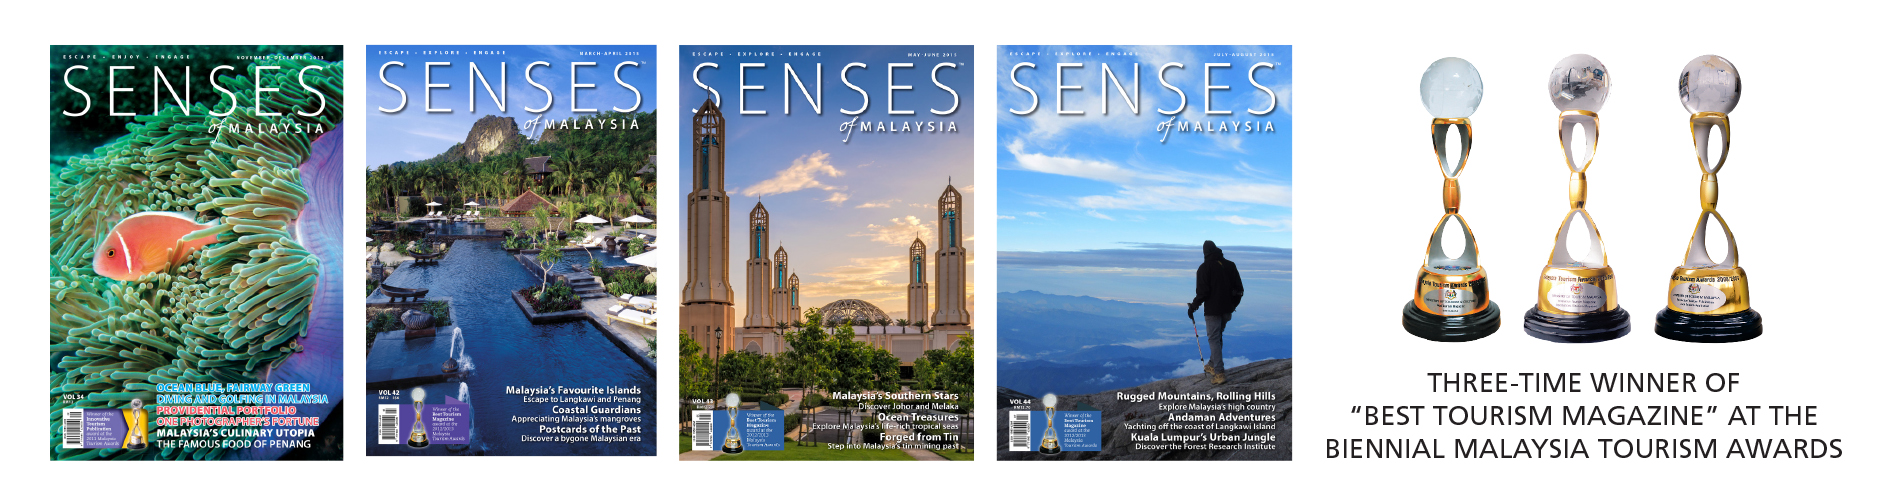 Senses of Malaysia cover photo